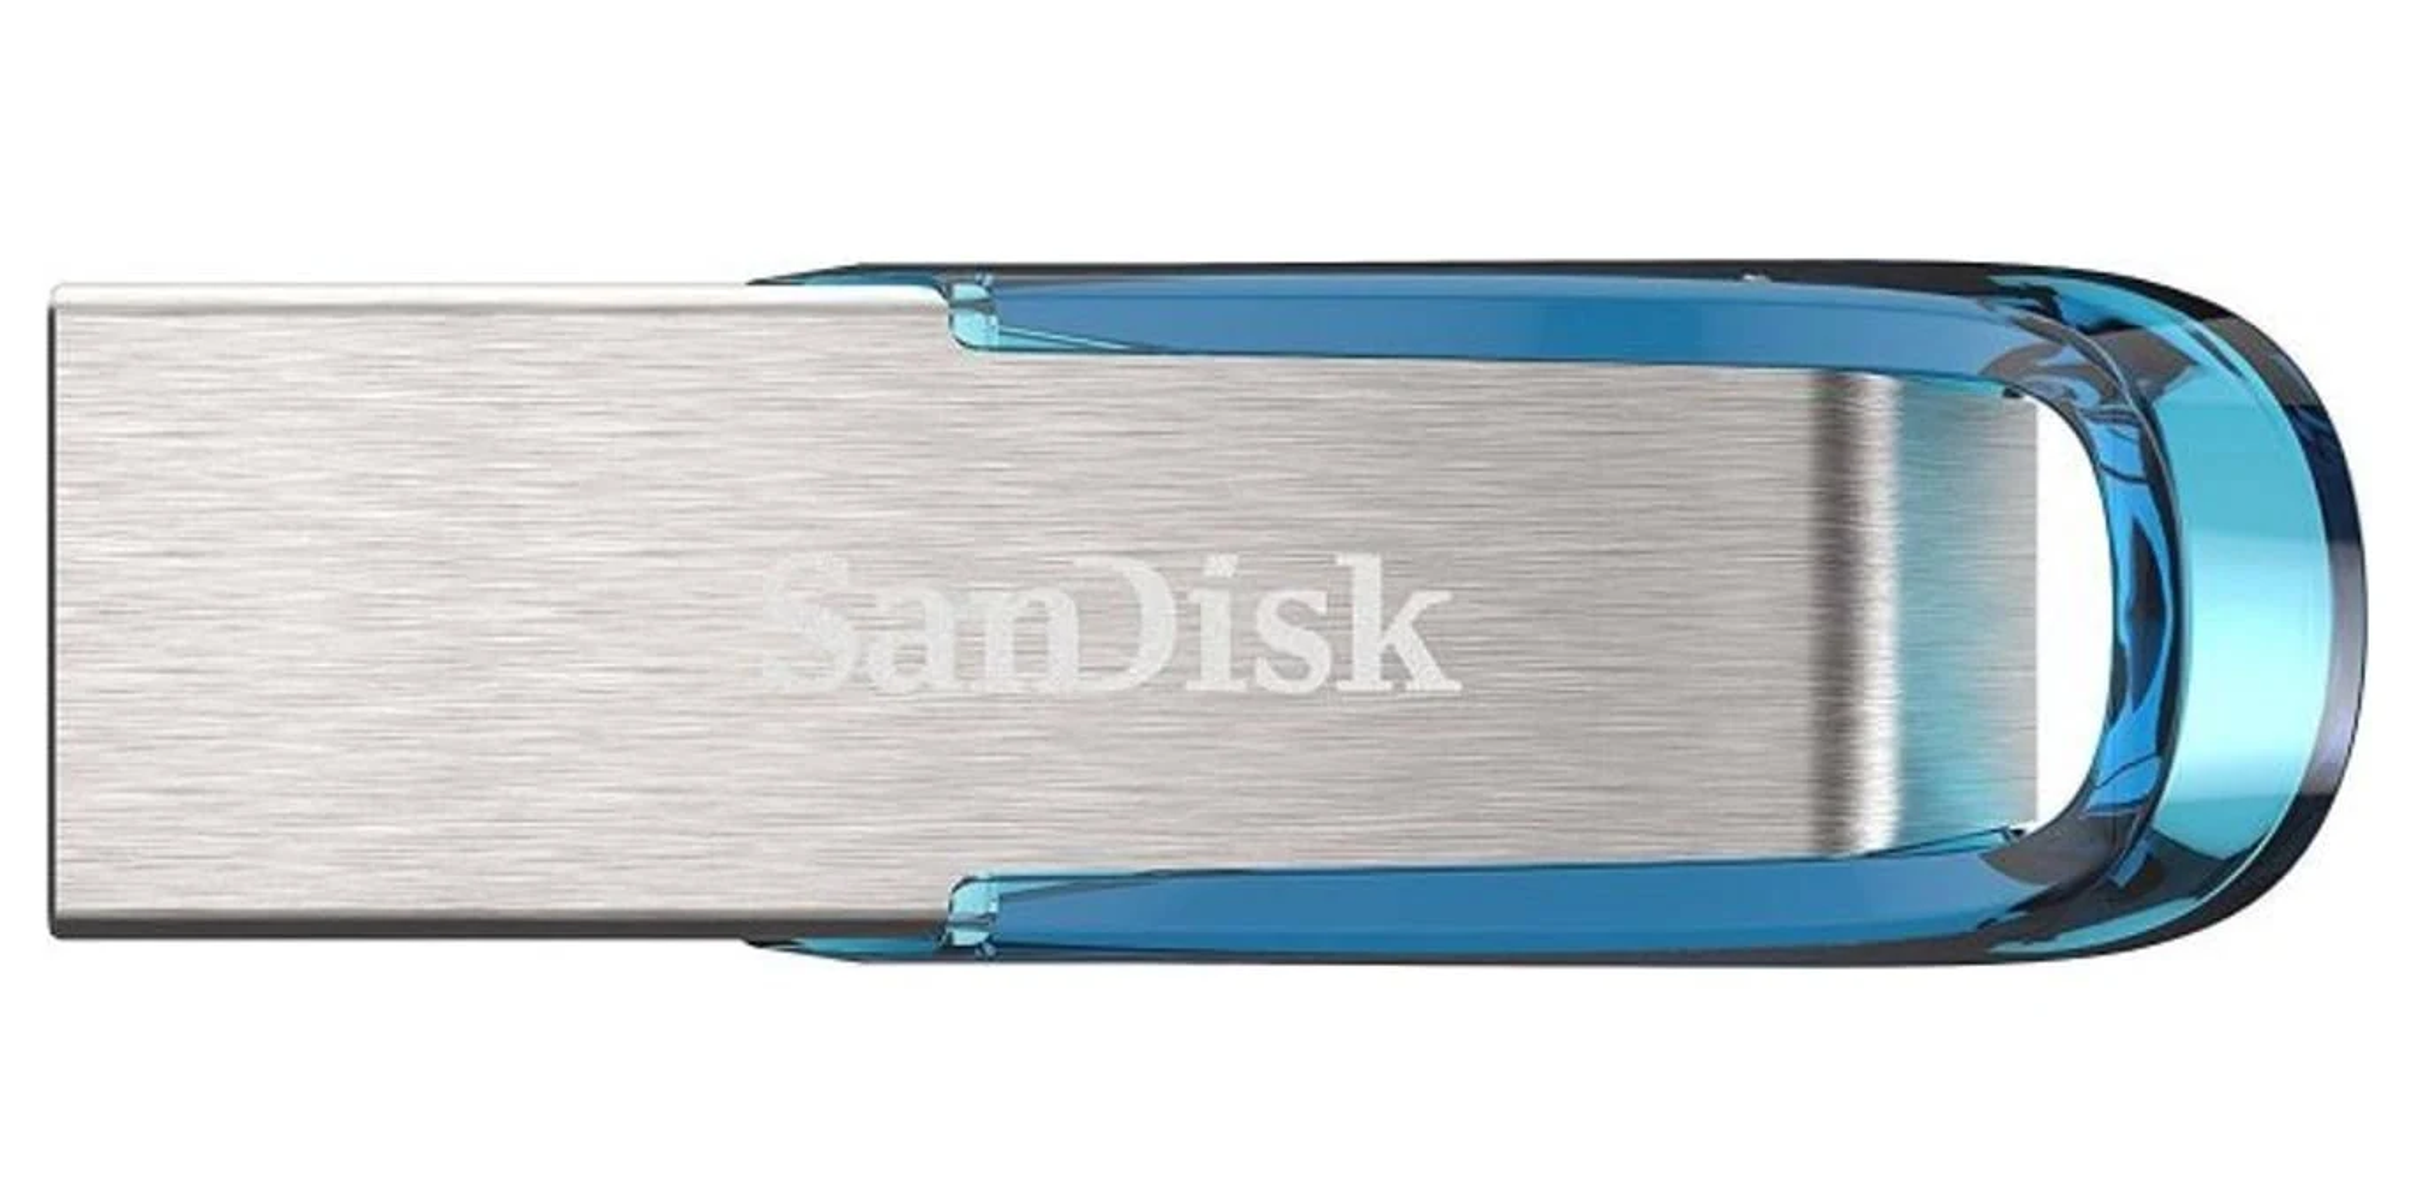 SANDISK SDCZ73-032G-G46B USB-Flash-Laufwerk (Schwarz, GB) 32